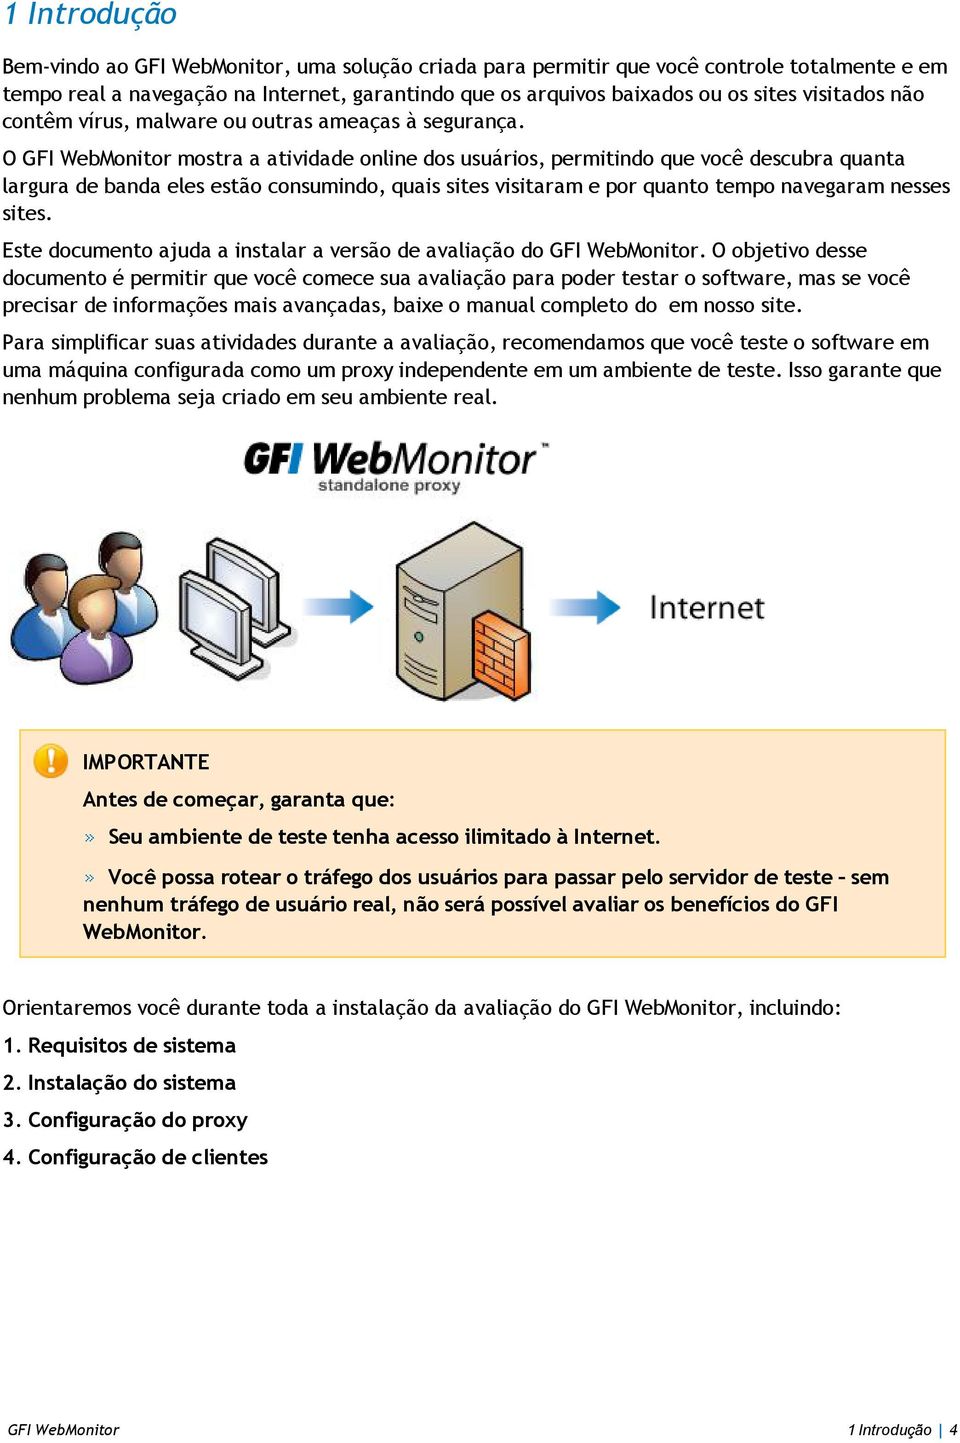 O GFI WebMonitor mostra a atividade online dos usuários, permitindo que você descubra quanta largura de banda eles estão consumindo, quais sites visitaram e por quanto tempo navegaram nesses sites.